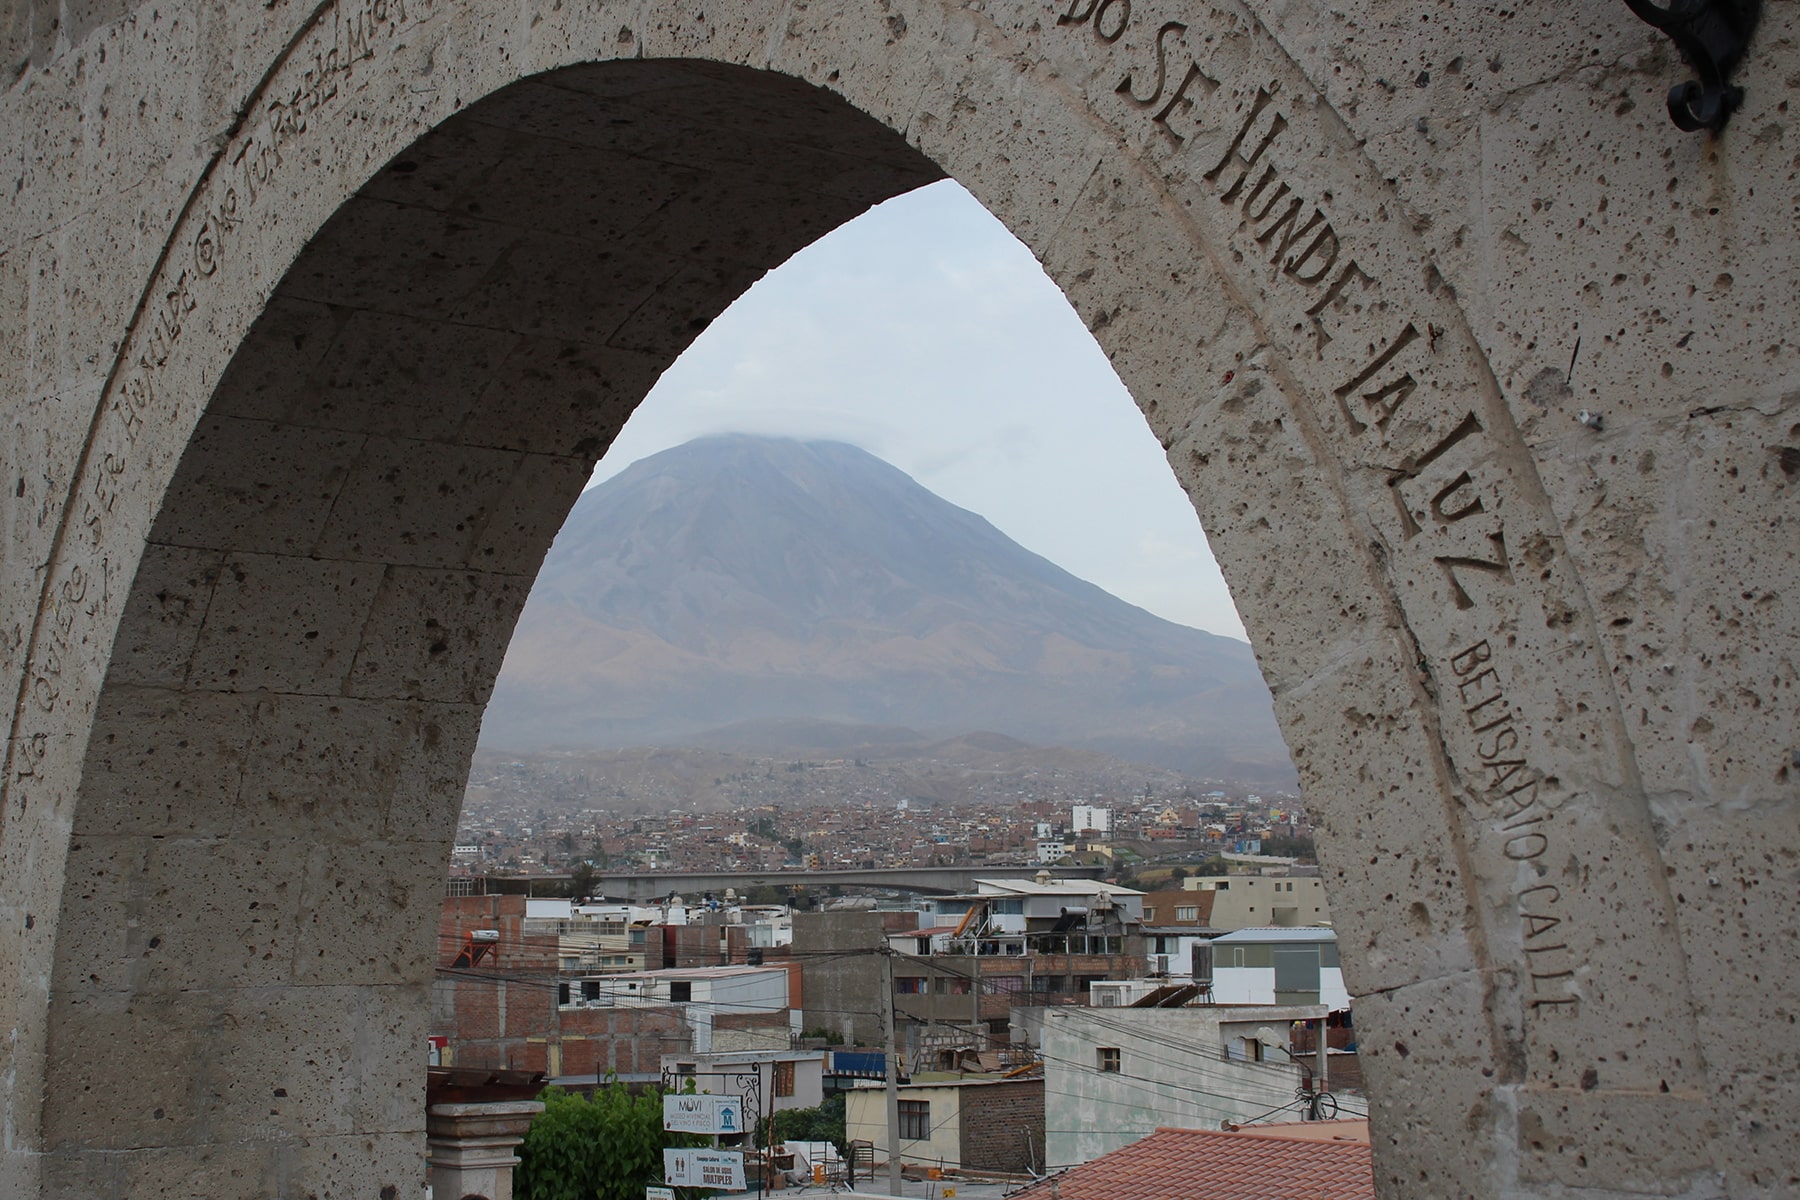 Vue de la ville d’Arequipa et du volcan El Misti depuis les arches de la place de Yanahuara